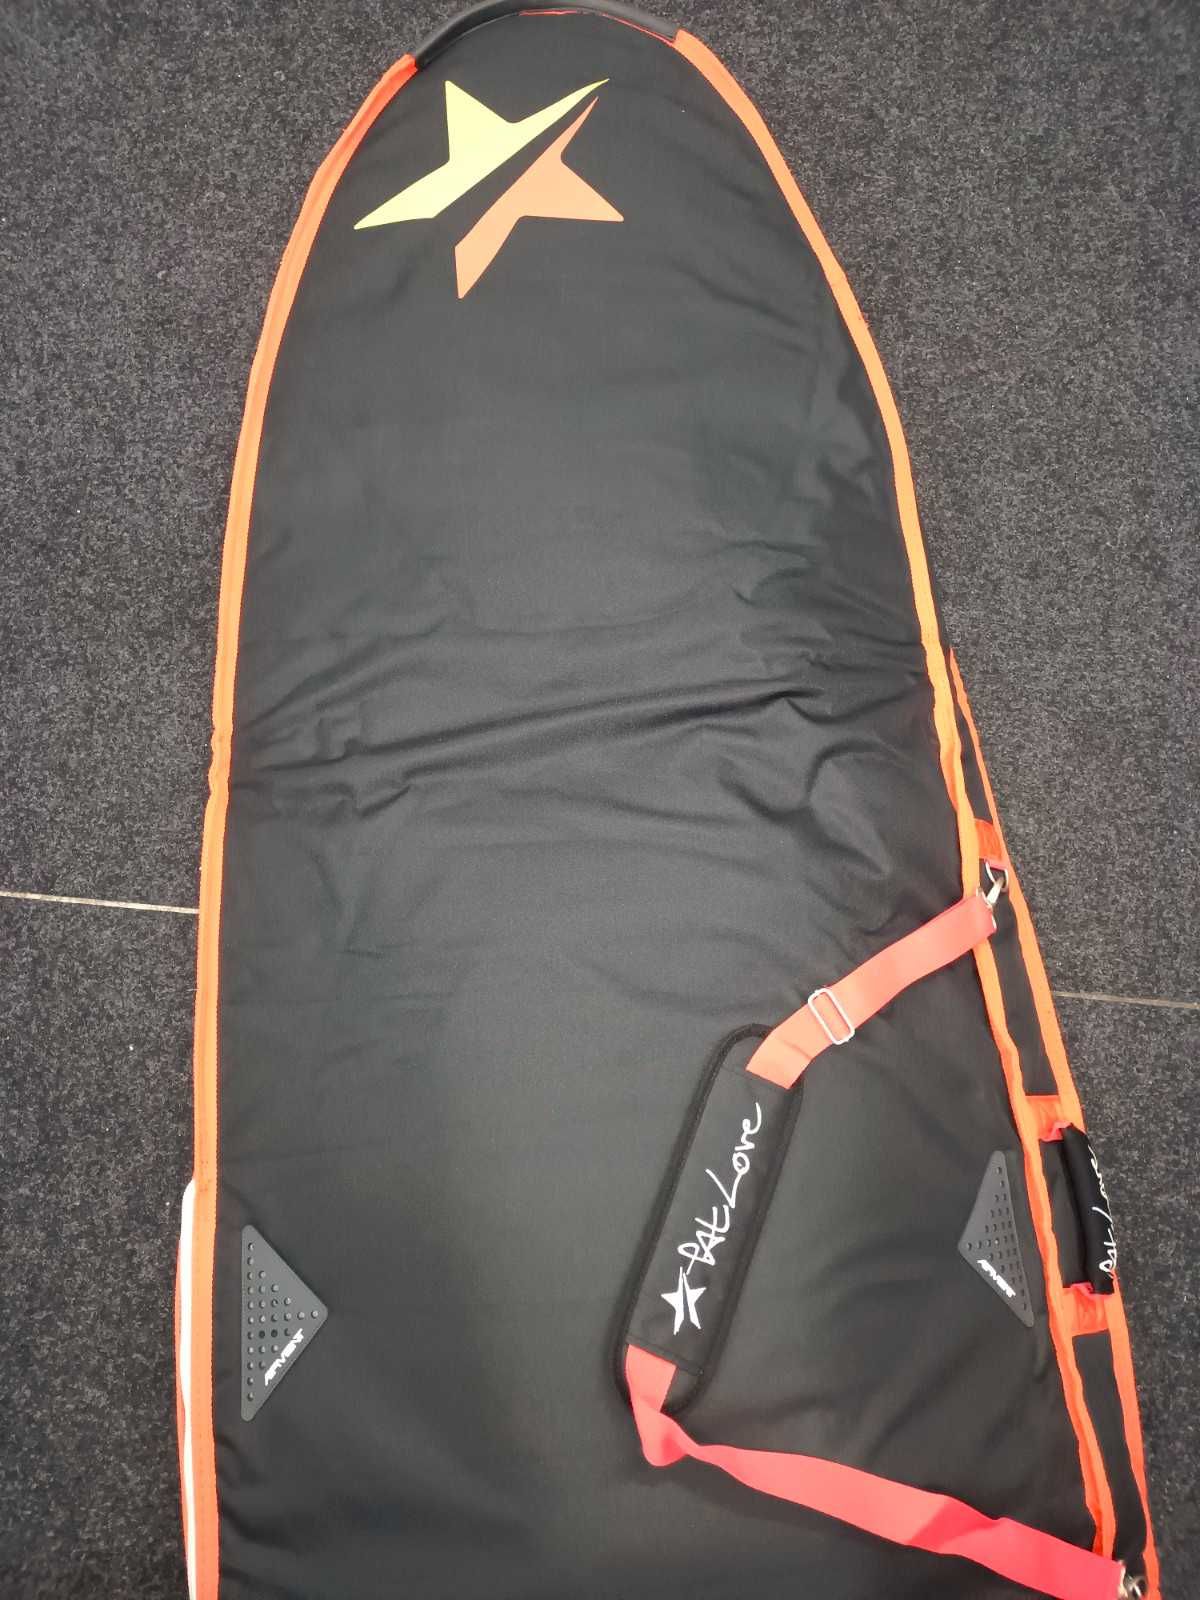 Pokrowiec PATLOVE na deskę windsurfingową, 240x65cm